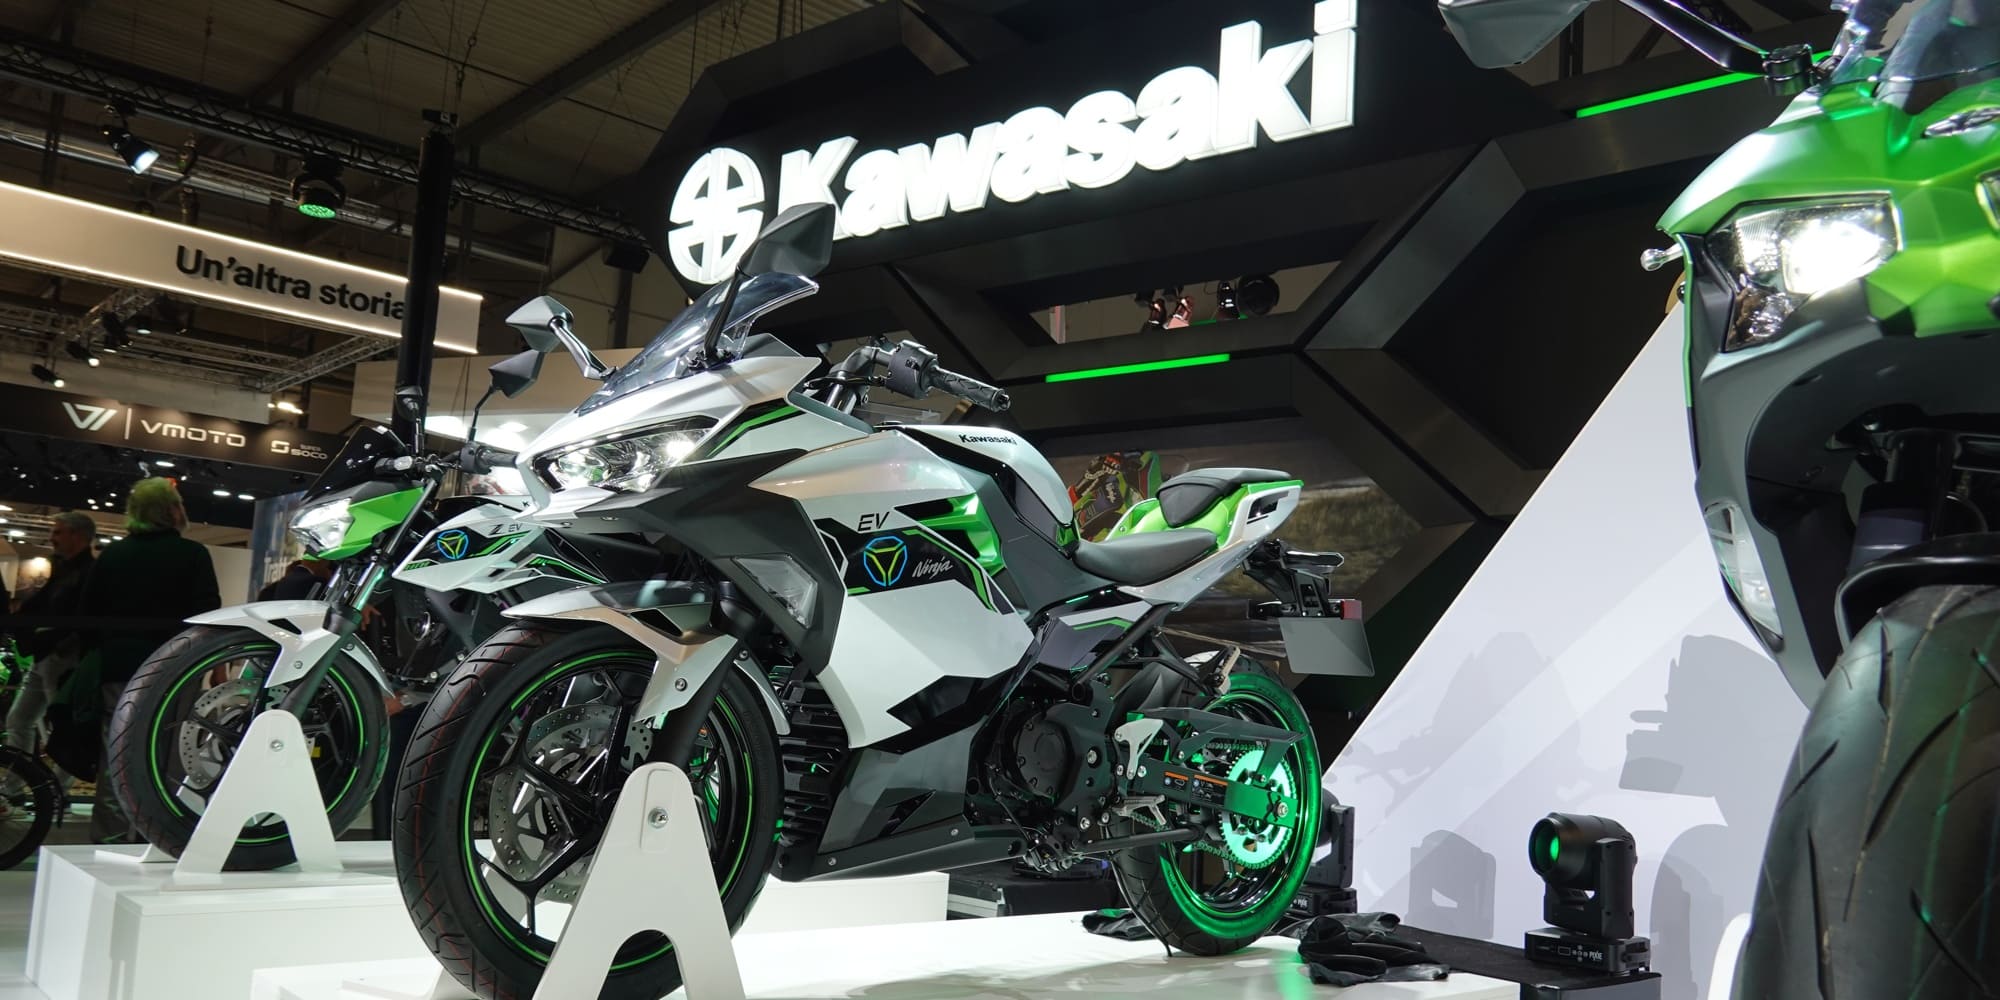 Kawasaki chuẩn bị đưa 2 mẫu m&#244; t&#244; thể thao chạy điện ra thị trường - Ảnh 1